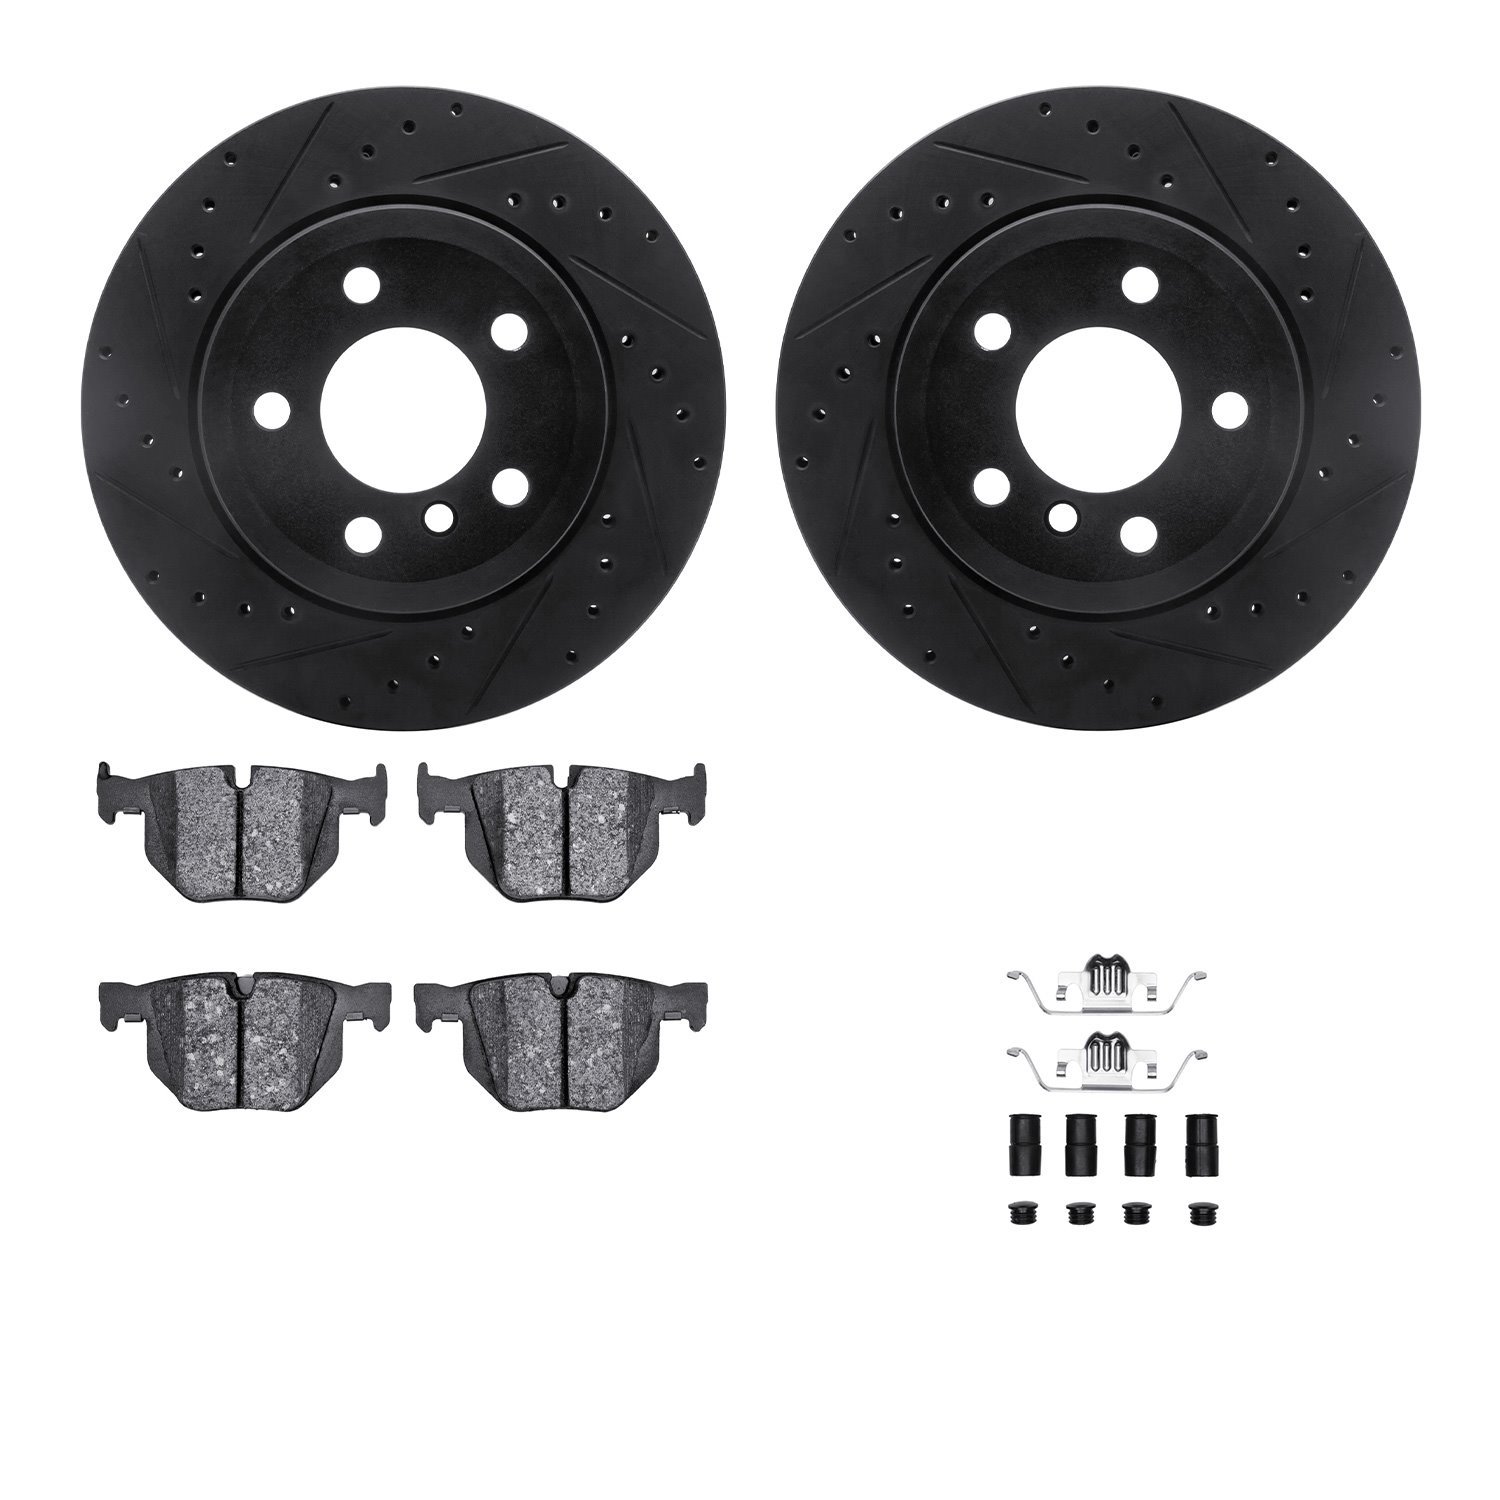 8612-31113 Drilled/Slotted Brake Rotors w/5000 Euro Ceramic Brake Pads Kit & Hardware [Black], 2007-2019 BMW, Position: Rear